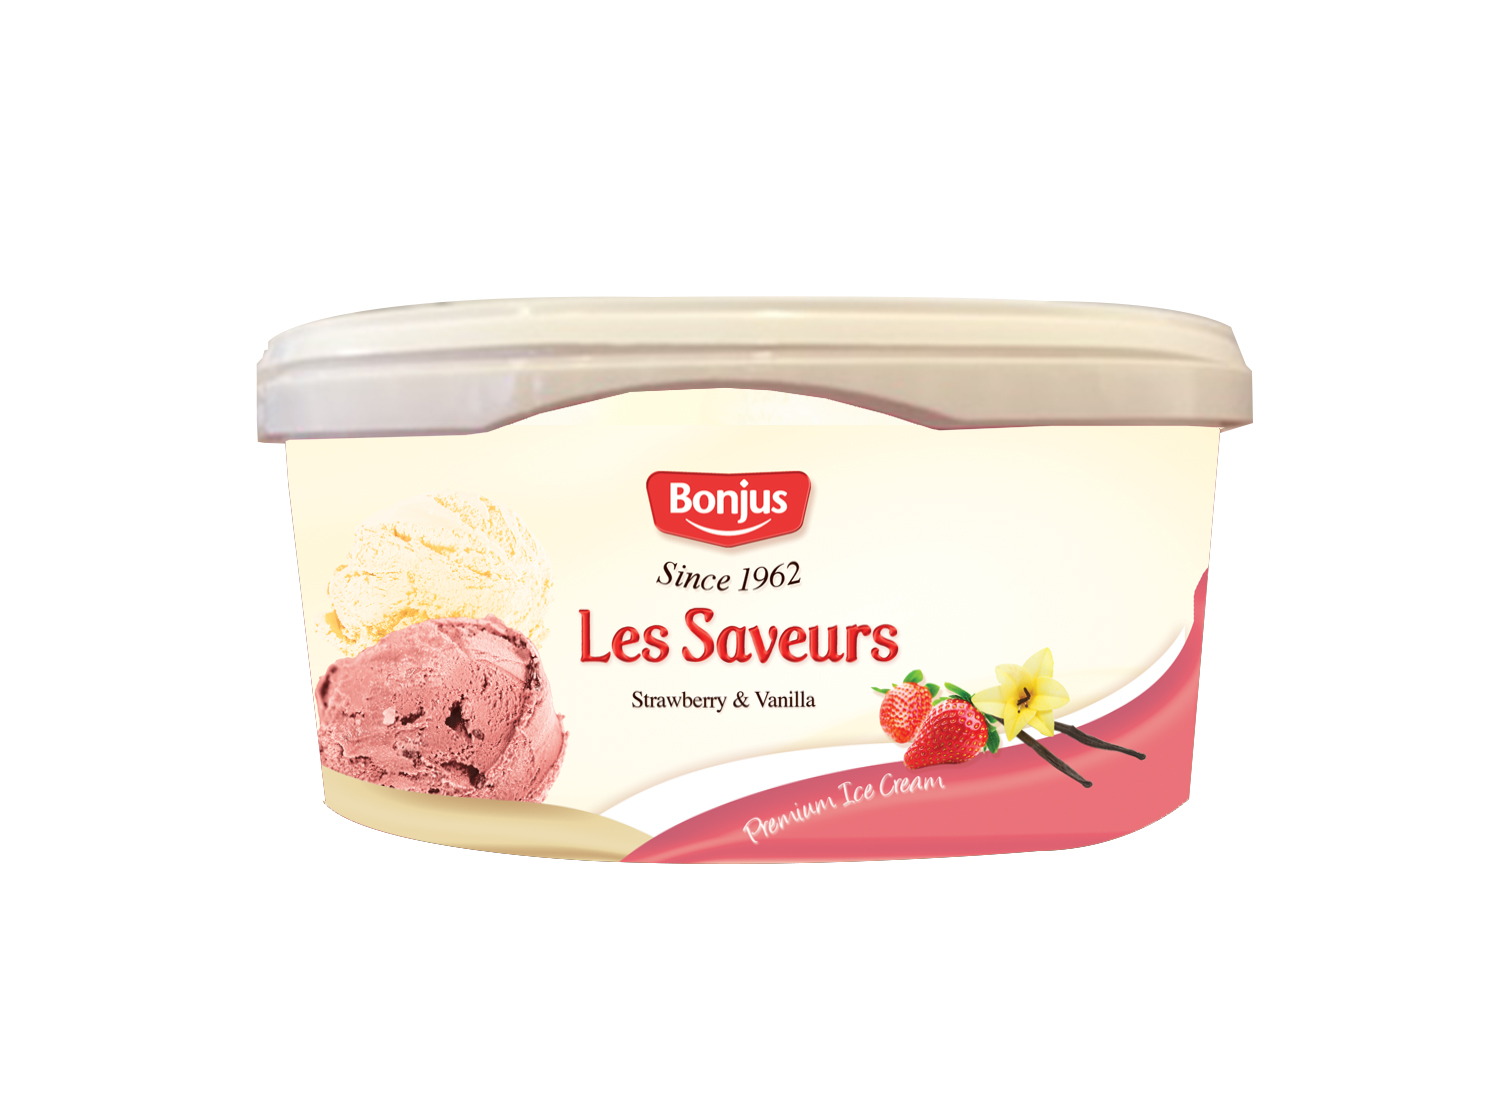 Les Saveurs Ice Cream